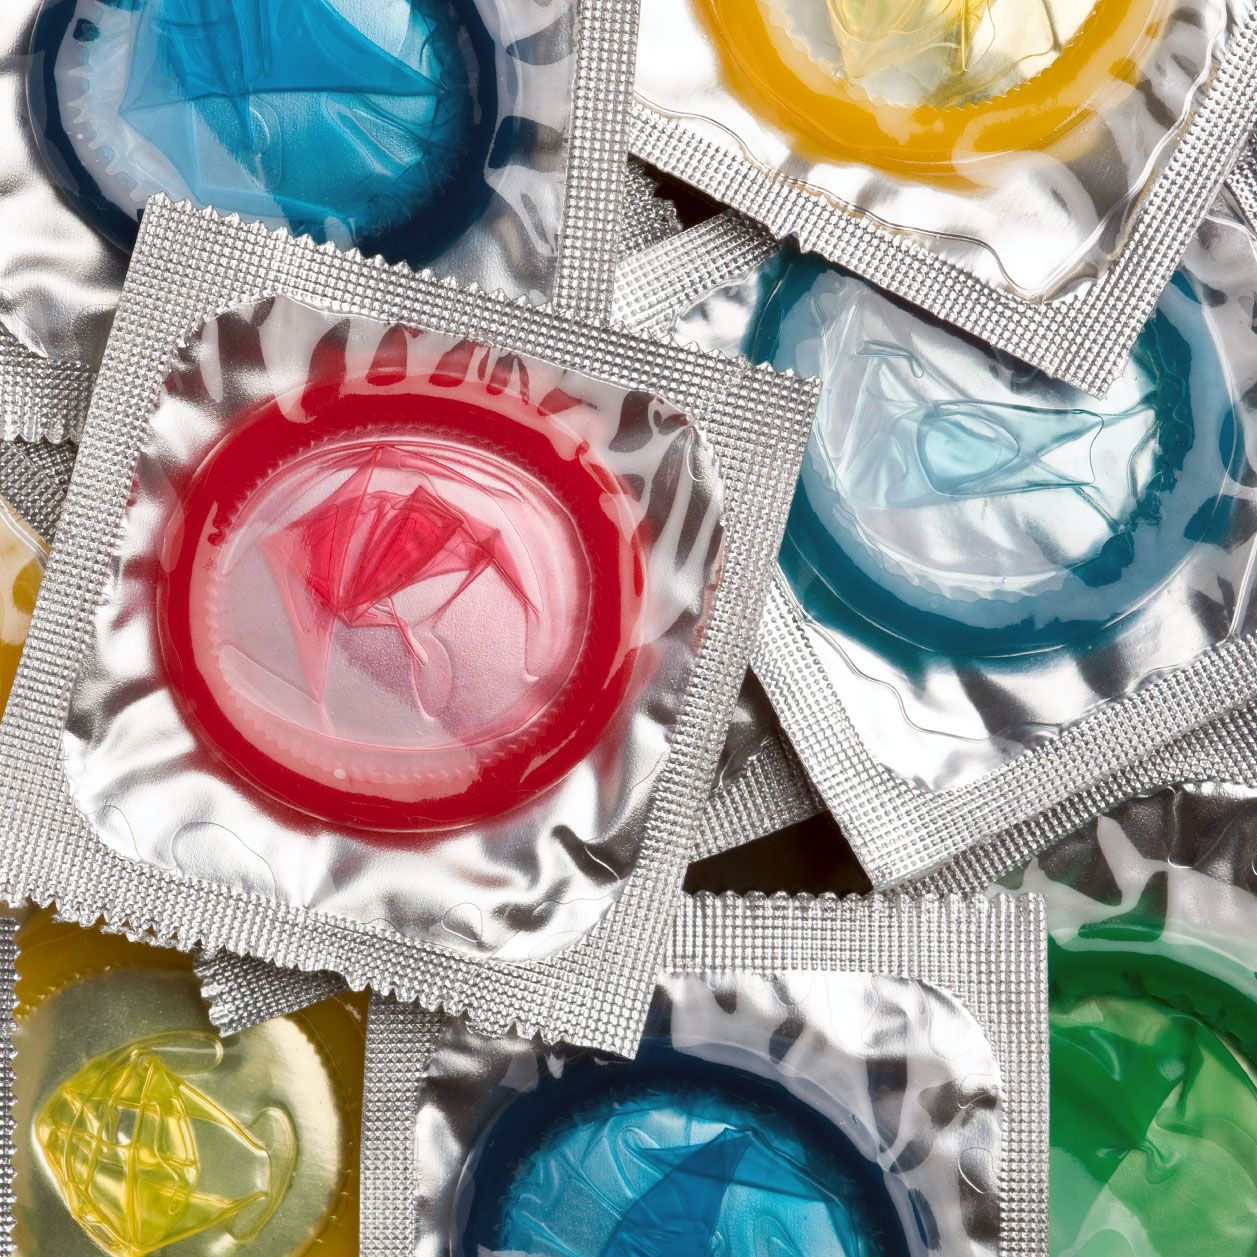 Kondome gibt es in vielen Variationen